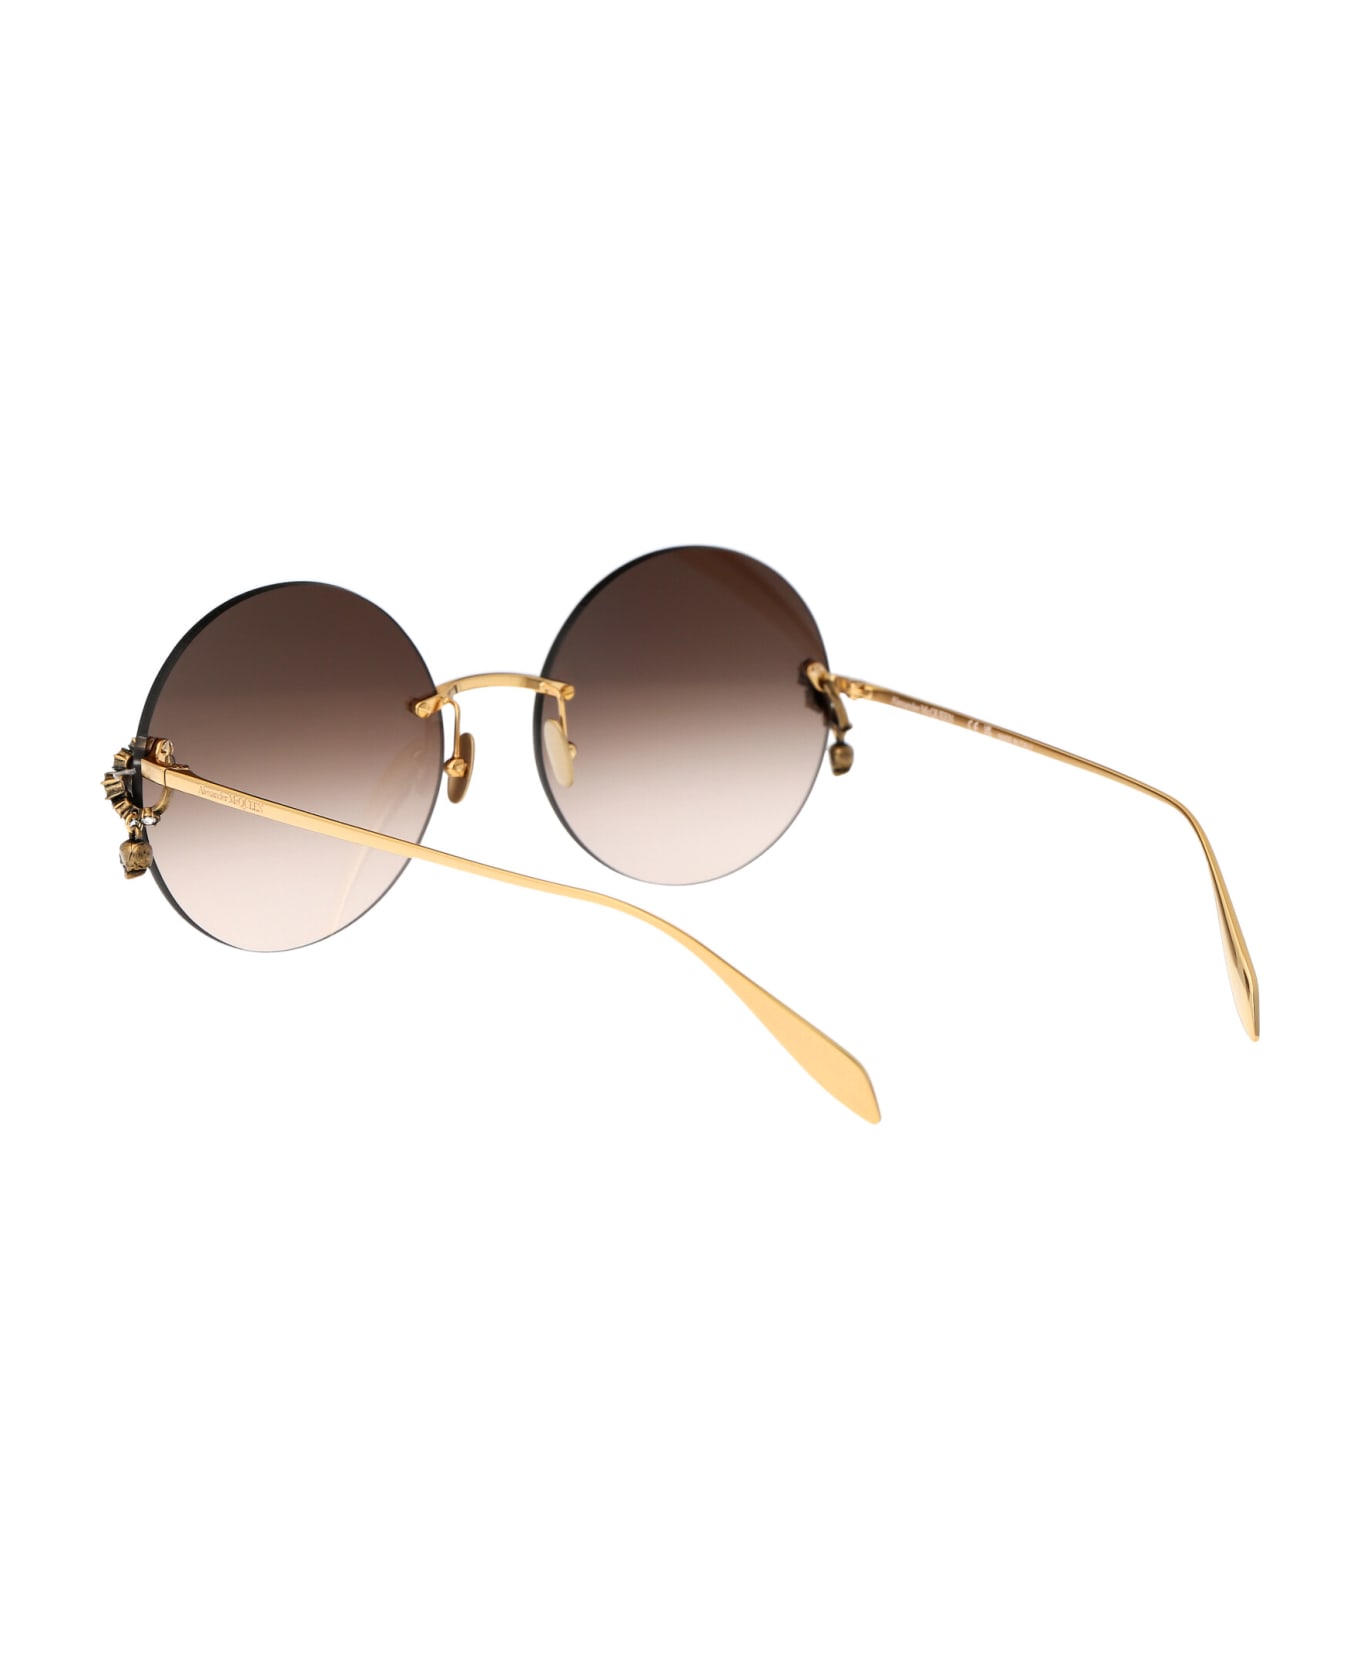 Alexander McQueen Eyewear Am0418s Sunglasses - 002 GOLD GOLD BROWN サングラス